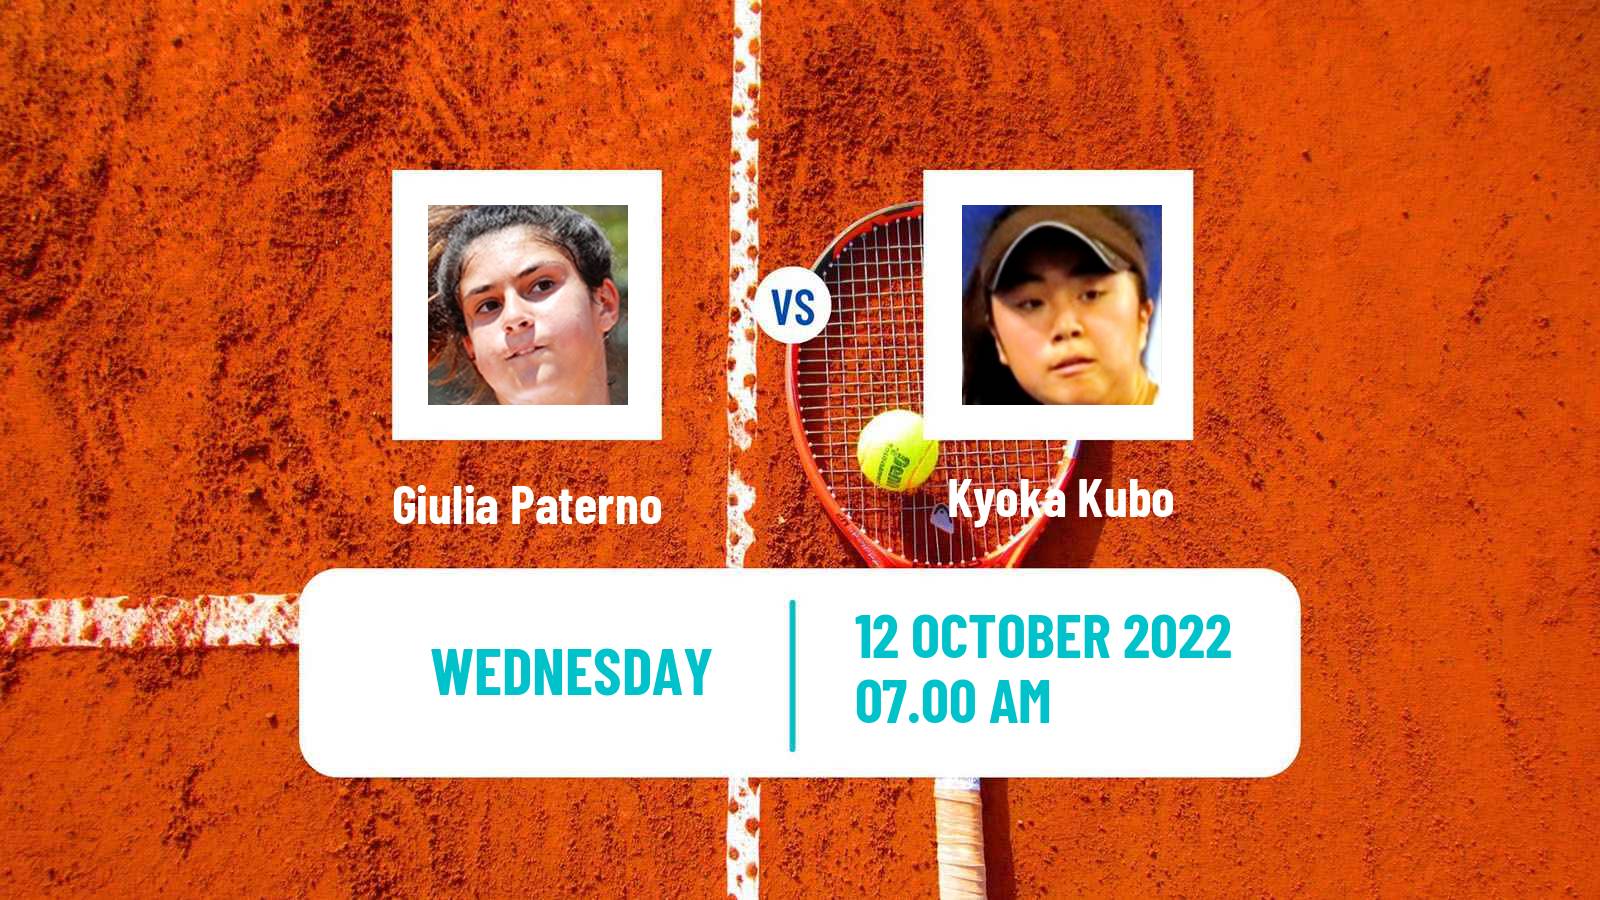 Tennis ITF Tournaments Giulia Paterno - Kyoka Kubo